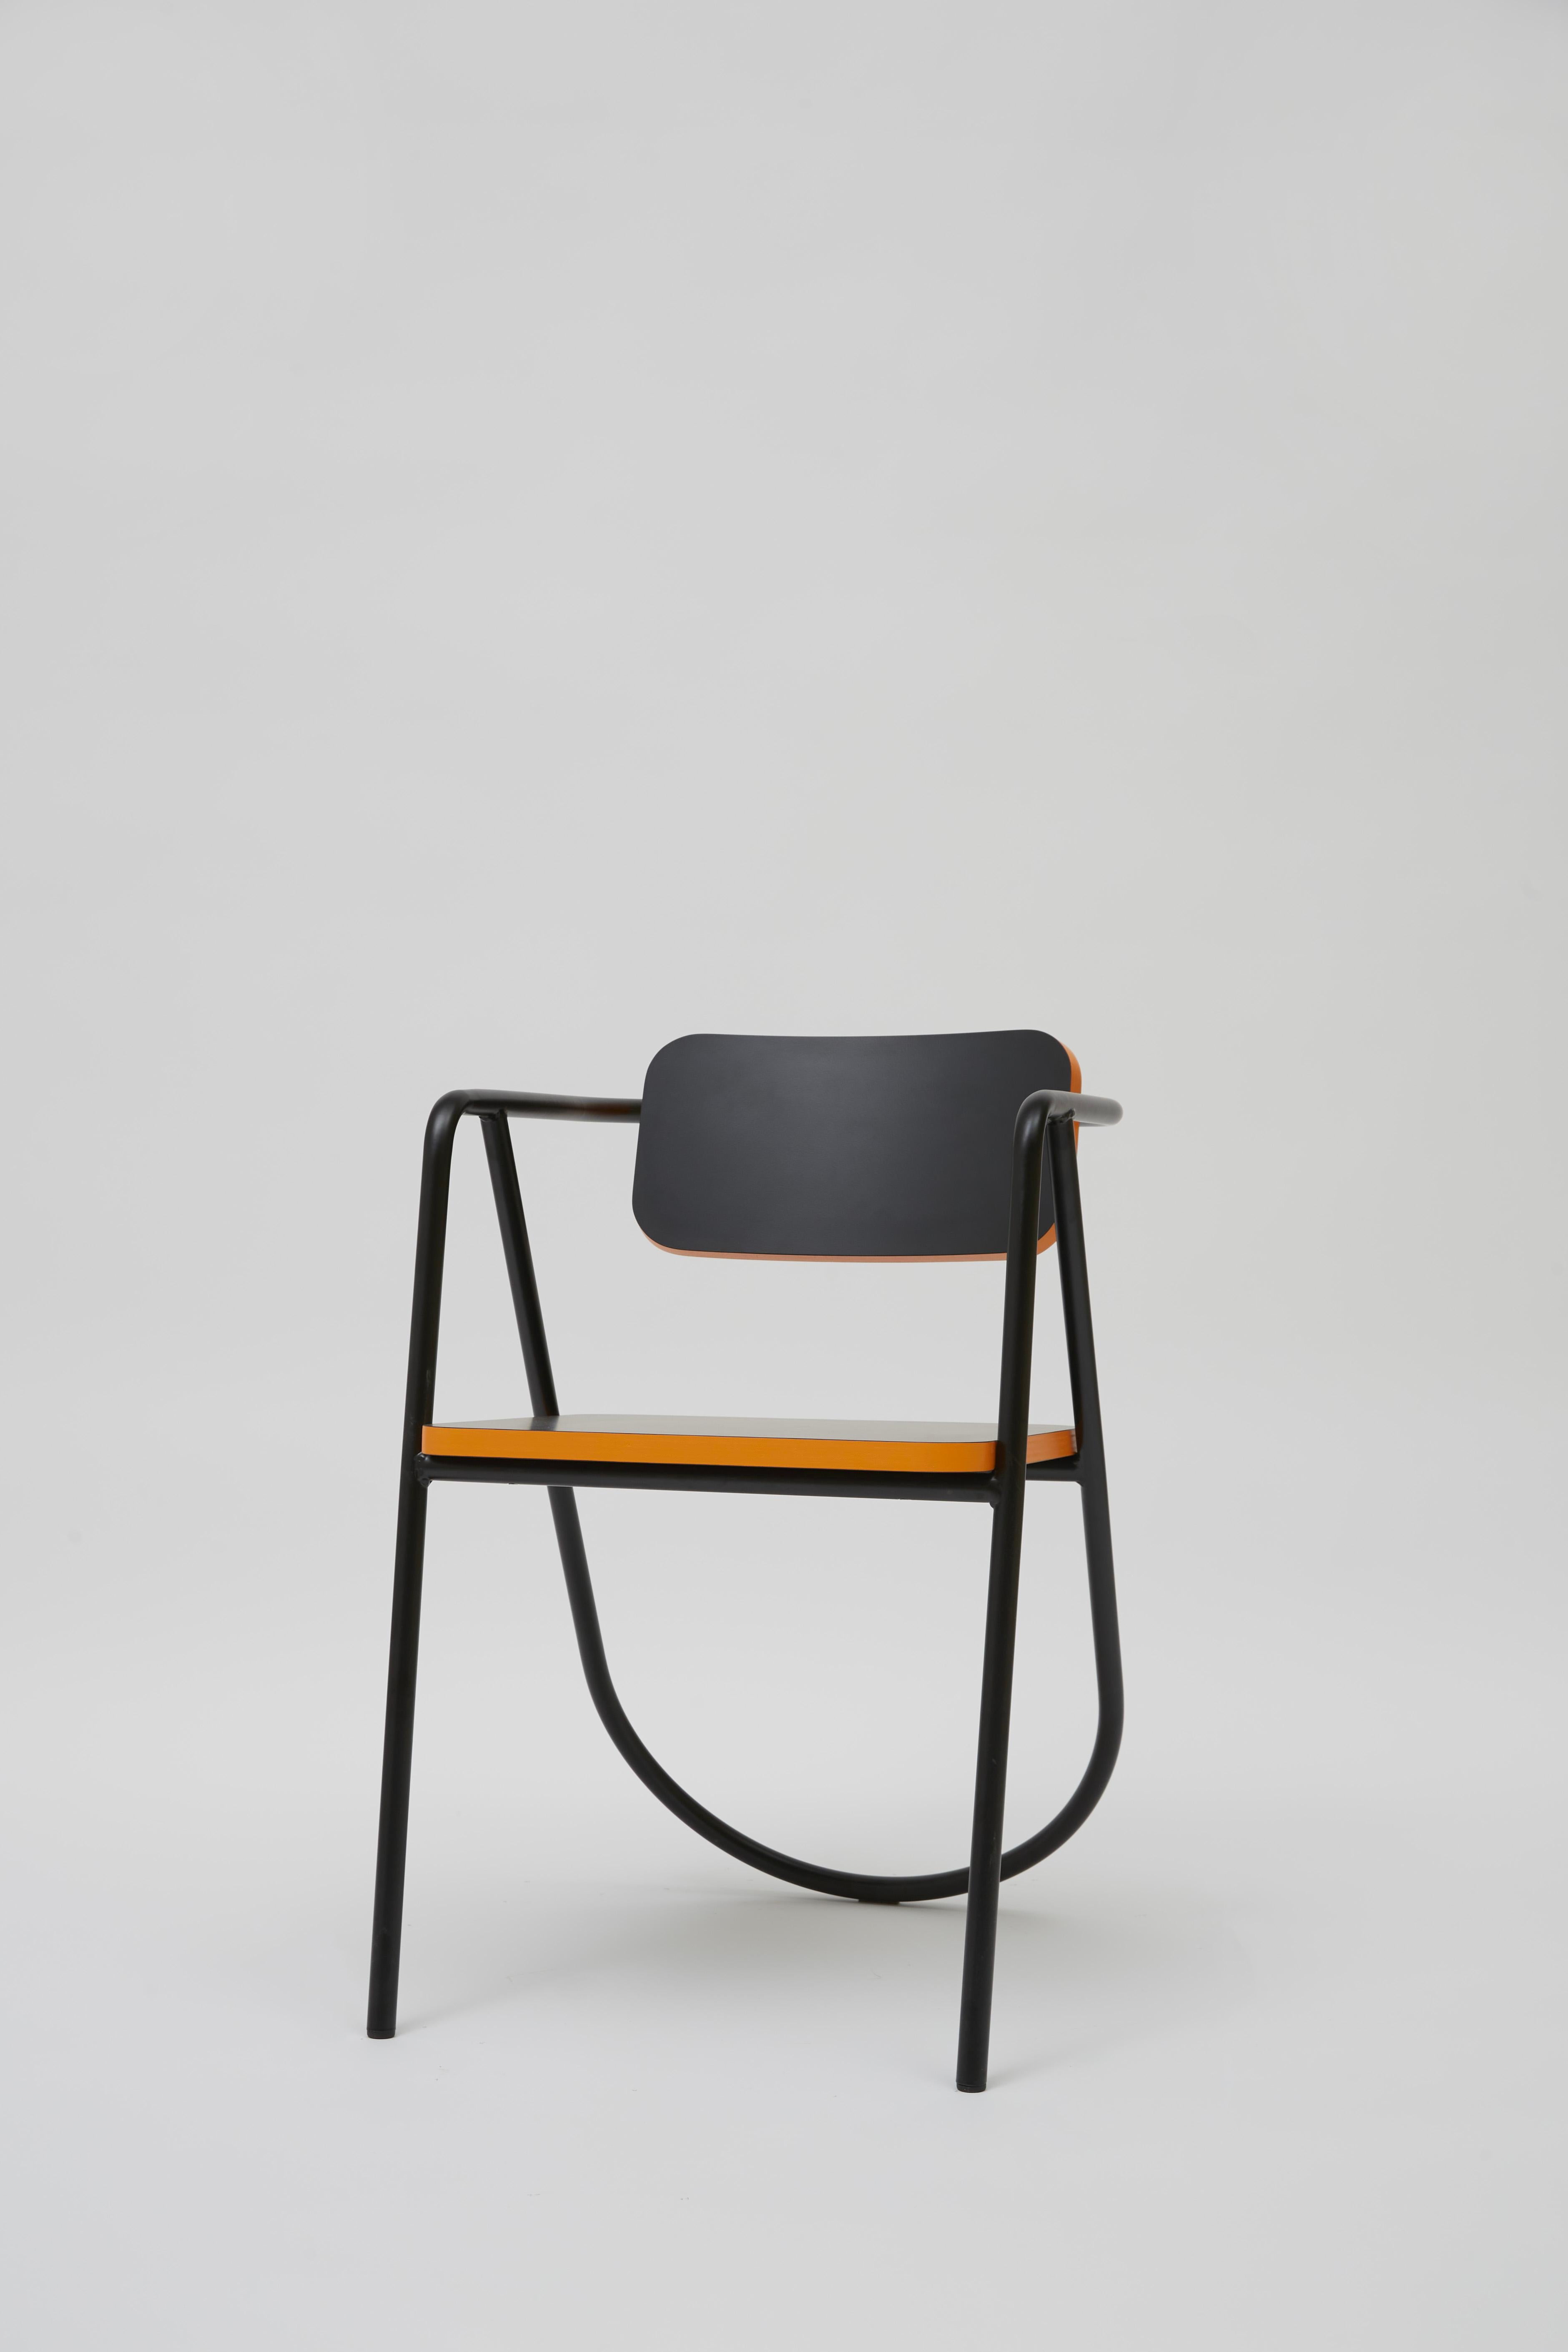 Other La Misciù Chair, Black & Orange For Sale